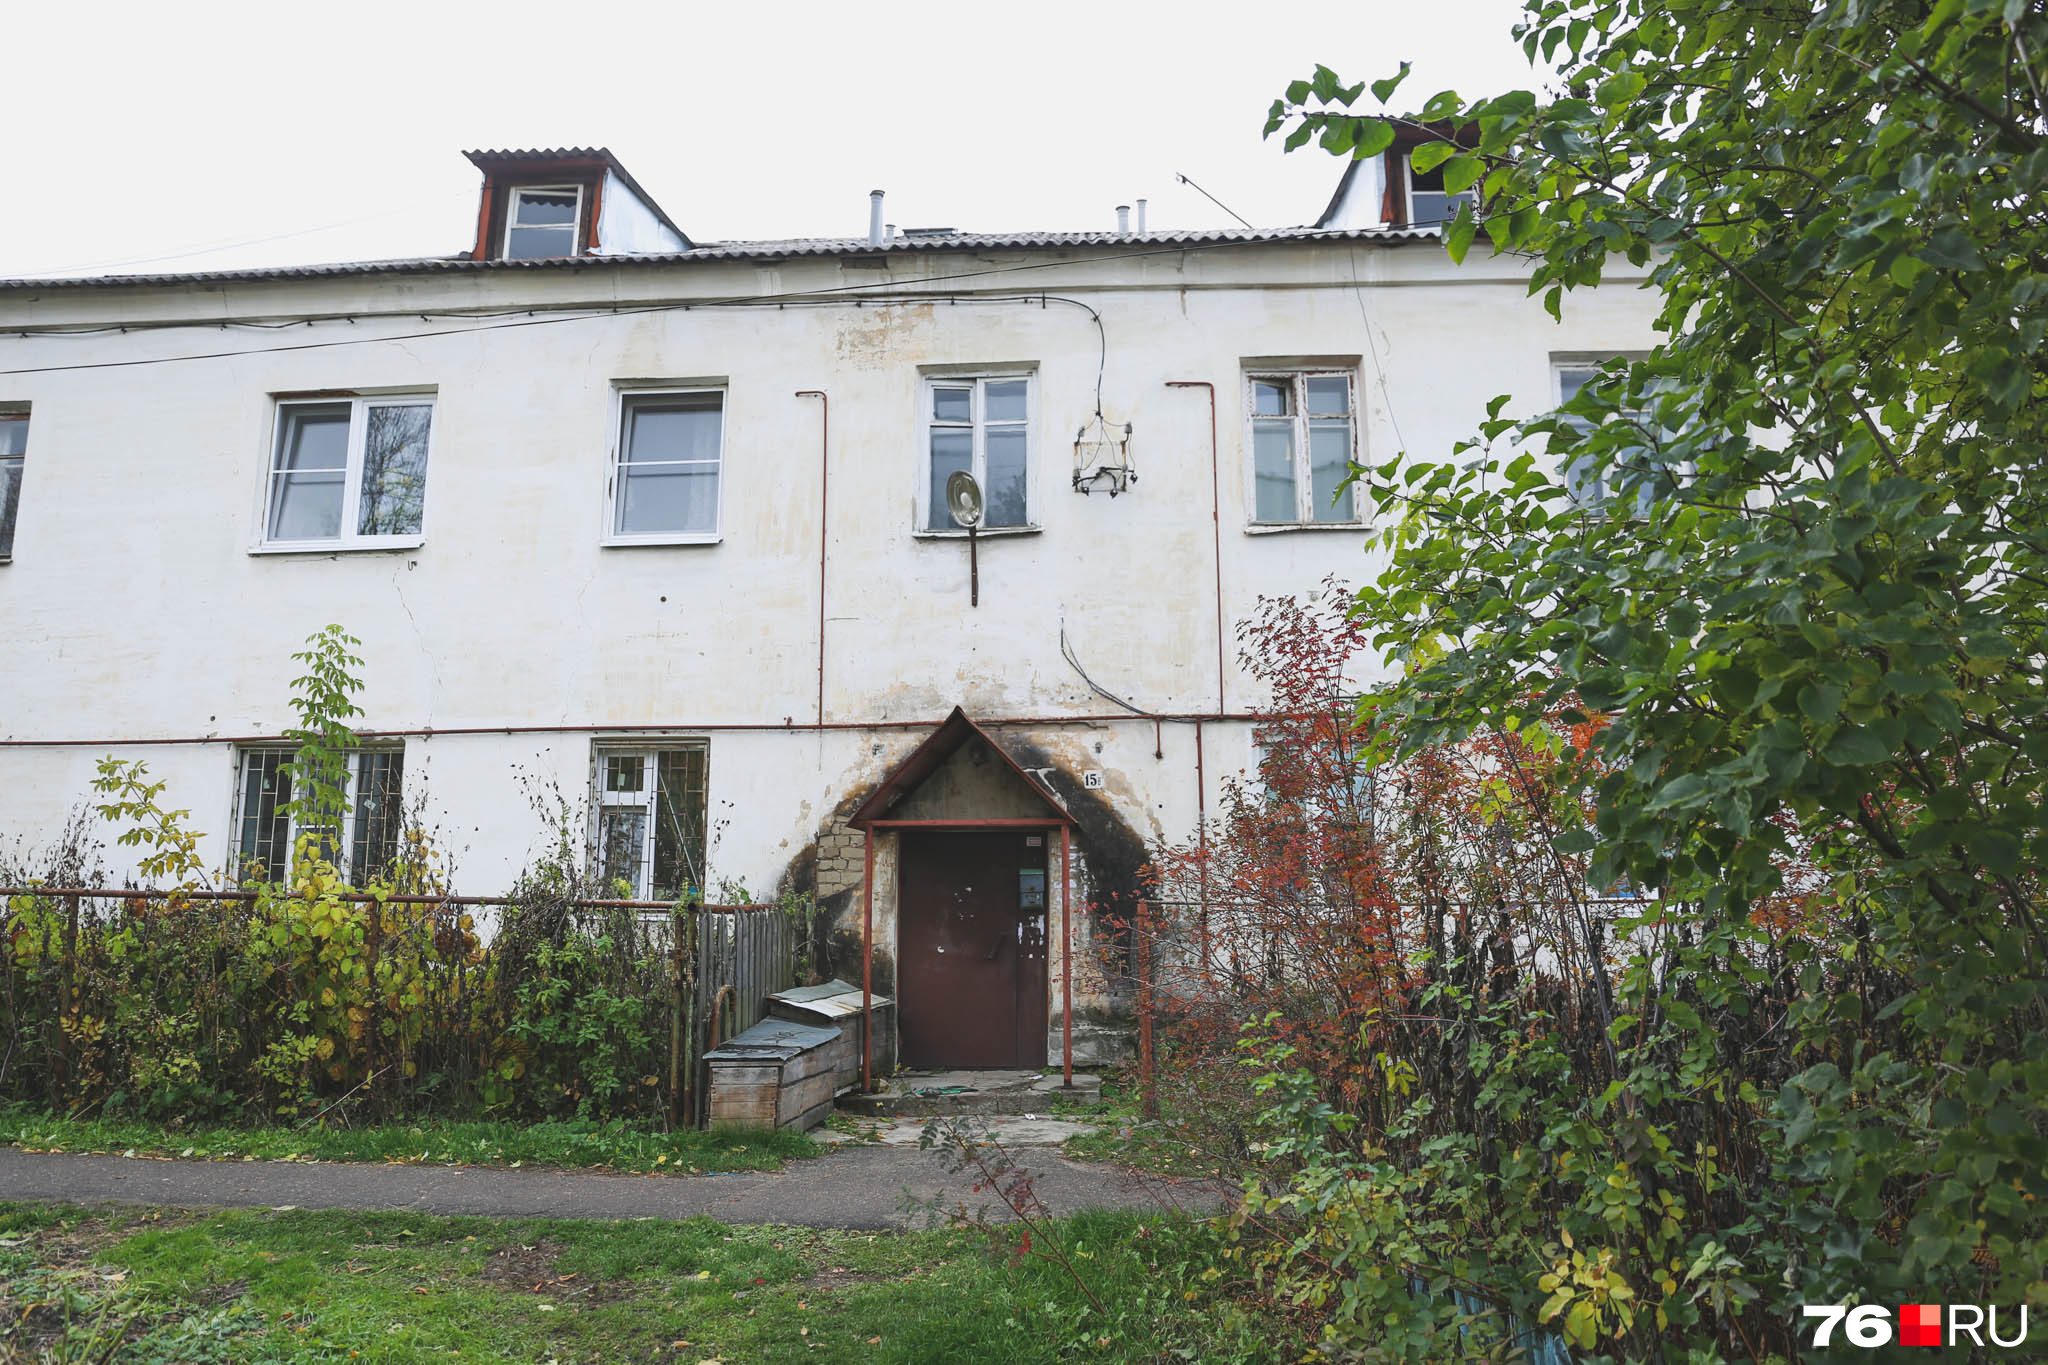 Дом, в котором живет семья Евгении, построен в 1965 году и не считается аварийным